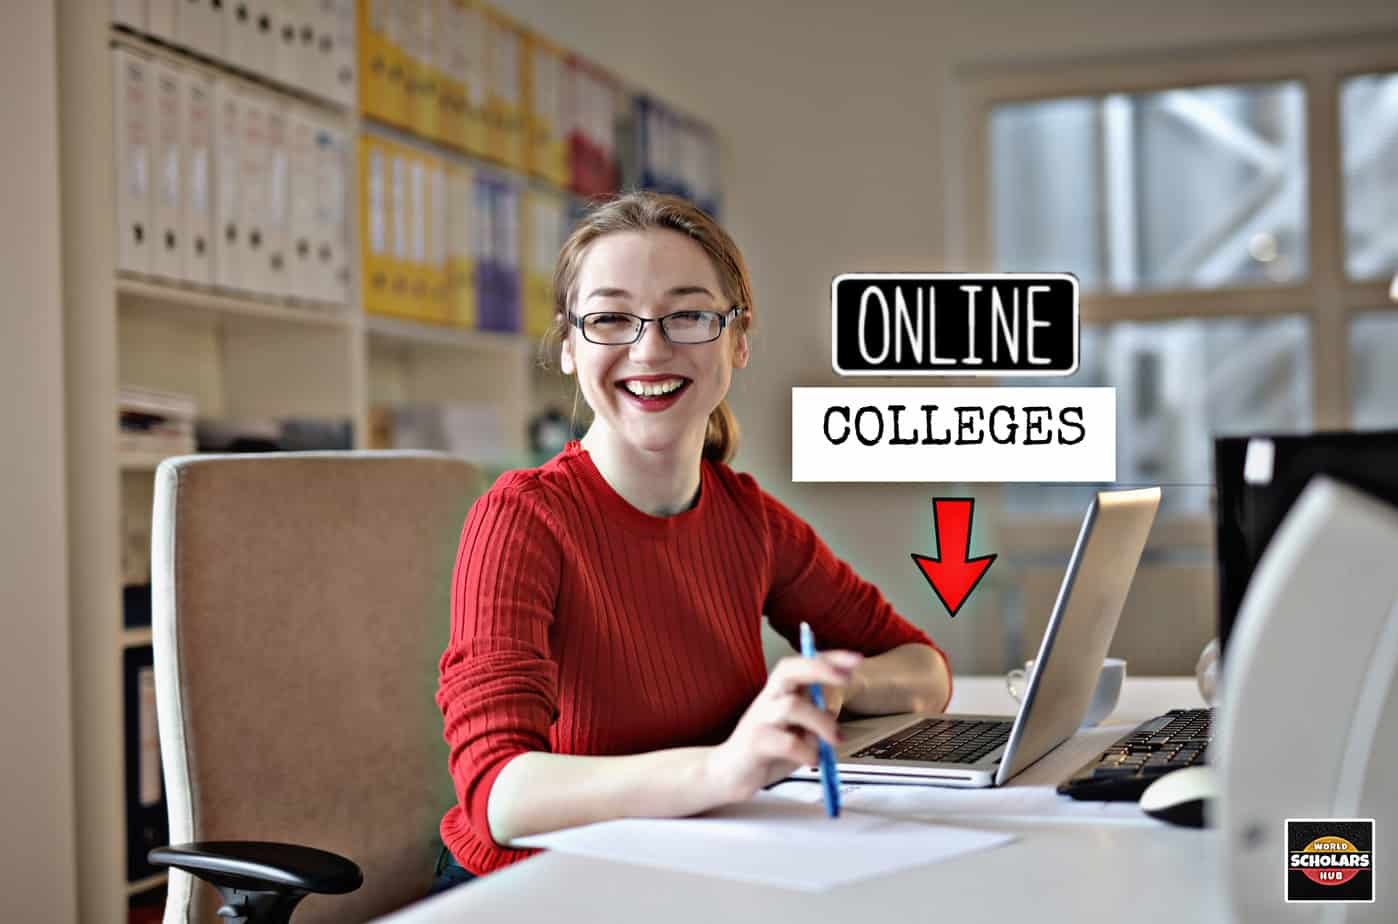 Perguruan Tinggi Online yang Menyediakan Laptop